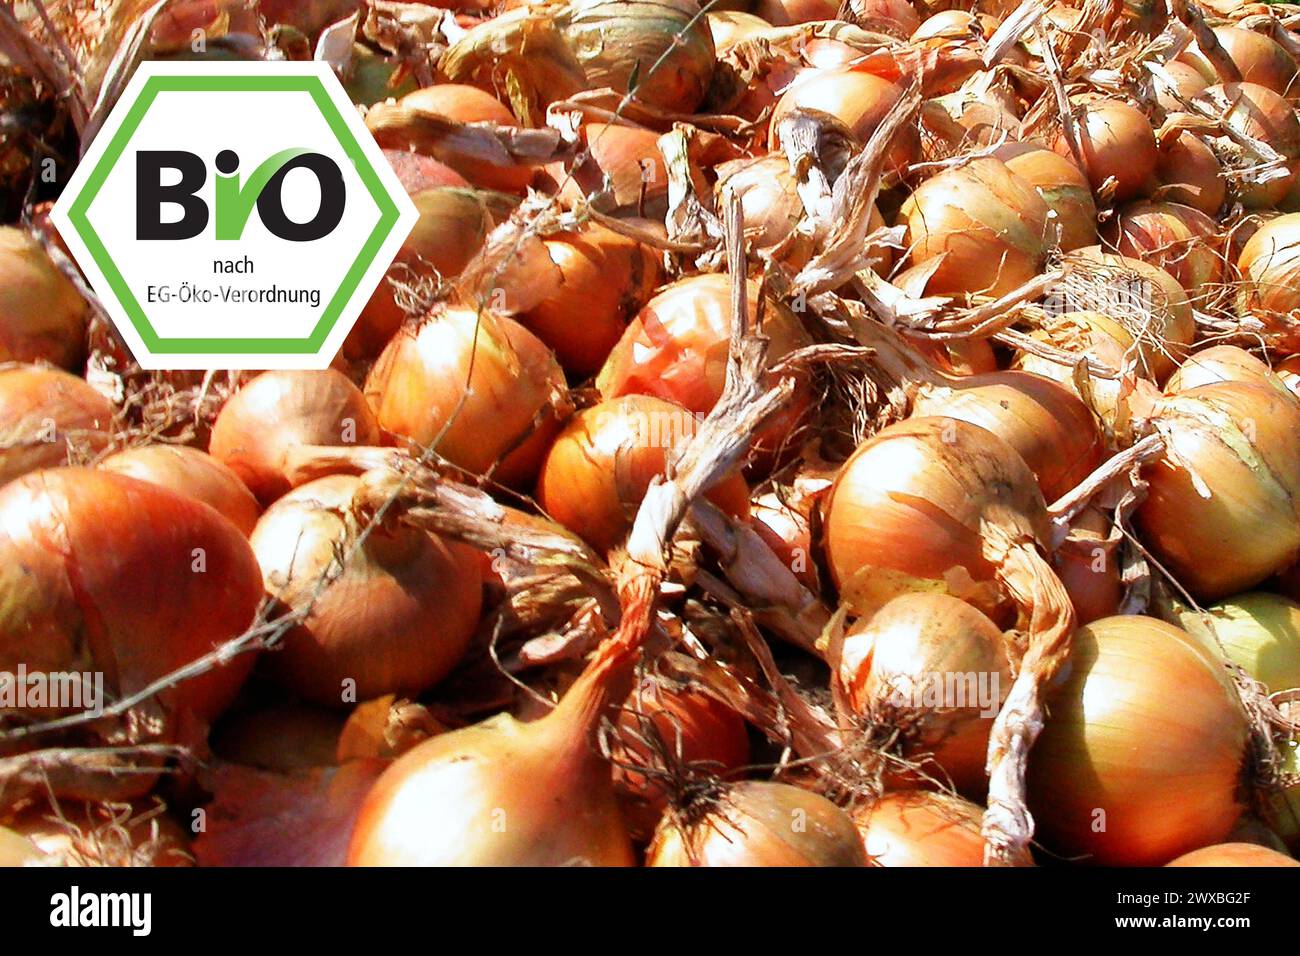 Zwiebeln mit Bio-Etikett, Lebensmittel, Zwiebeln, Zwiebelernte, Holland, Niederlande, BIO, Bio-Etikett Stockfoto